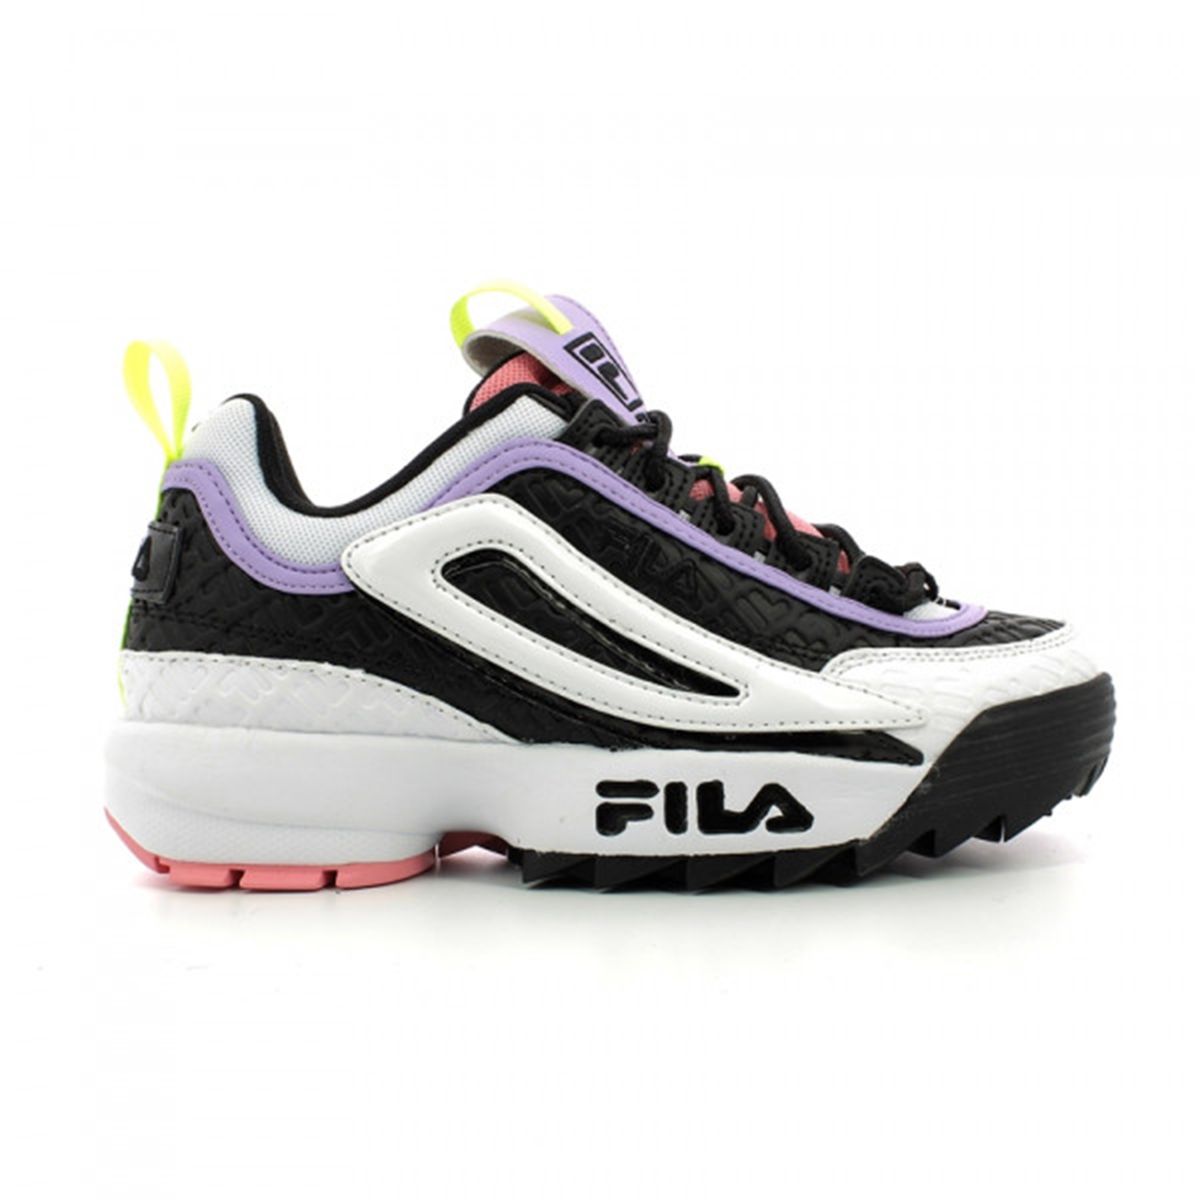 FFW0091 - Shoes - Fila